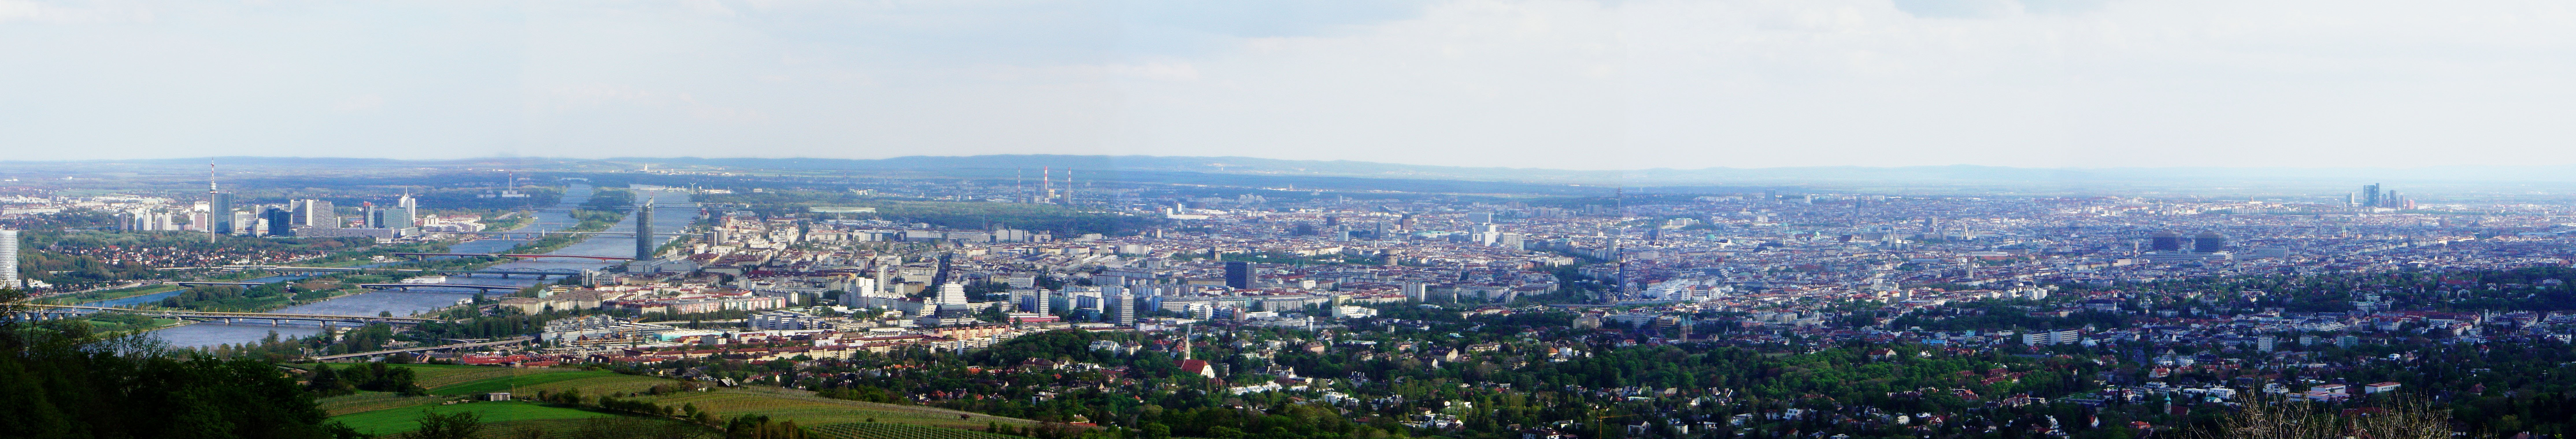 File:Panorama Vienna.jpg - Wikimedia Commons